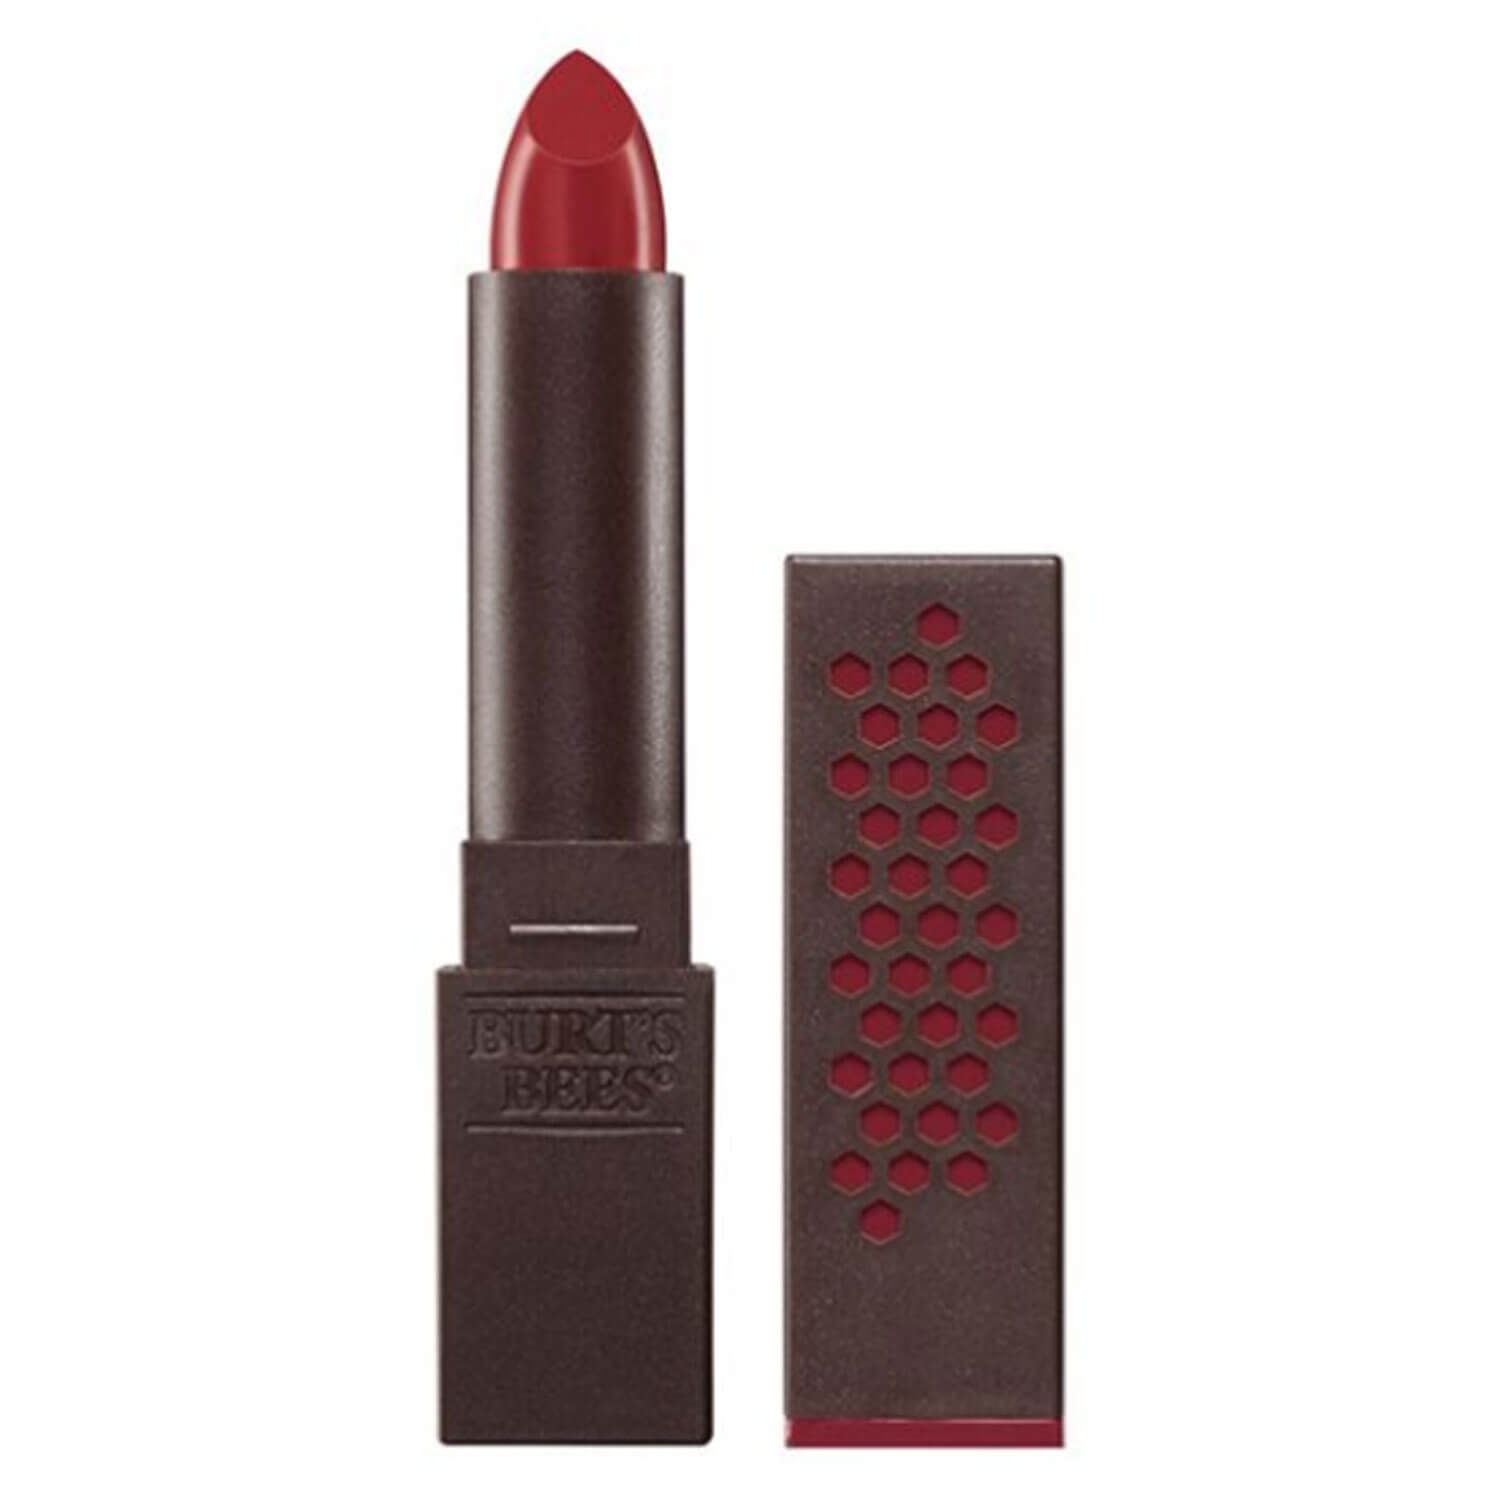 Produktbild von Burt's Bees - Lipstick Crimson Coast